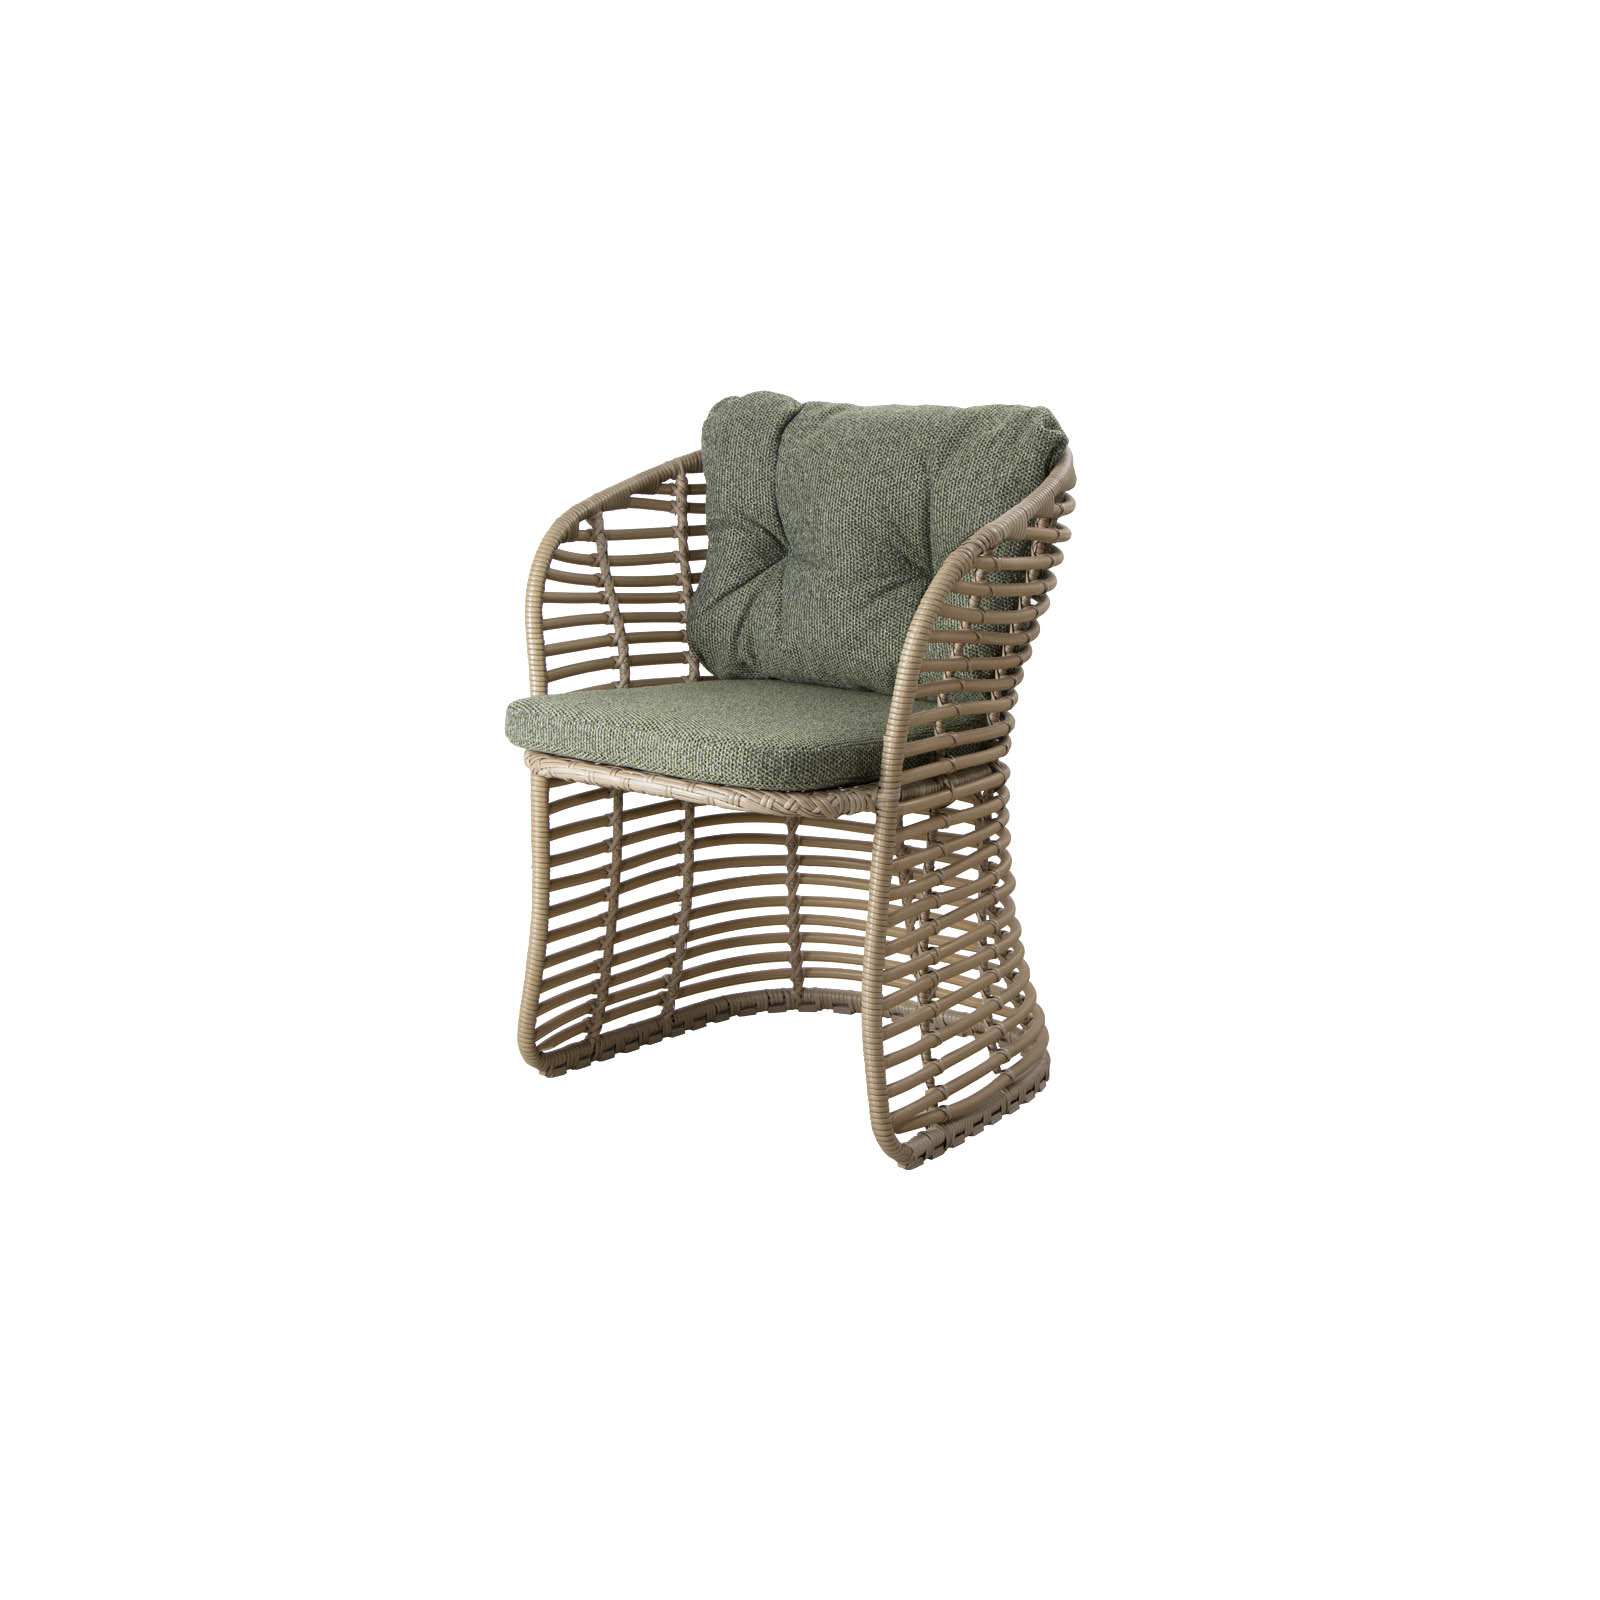 Basket Sessel aus Cane-line Weave in Natural mit Kissen aus Cane-line Wove in Dark Green